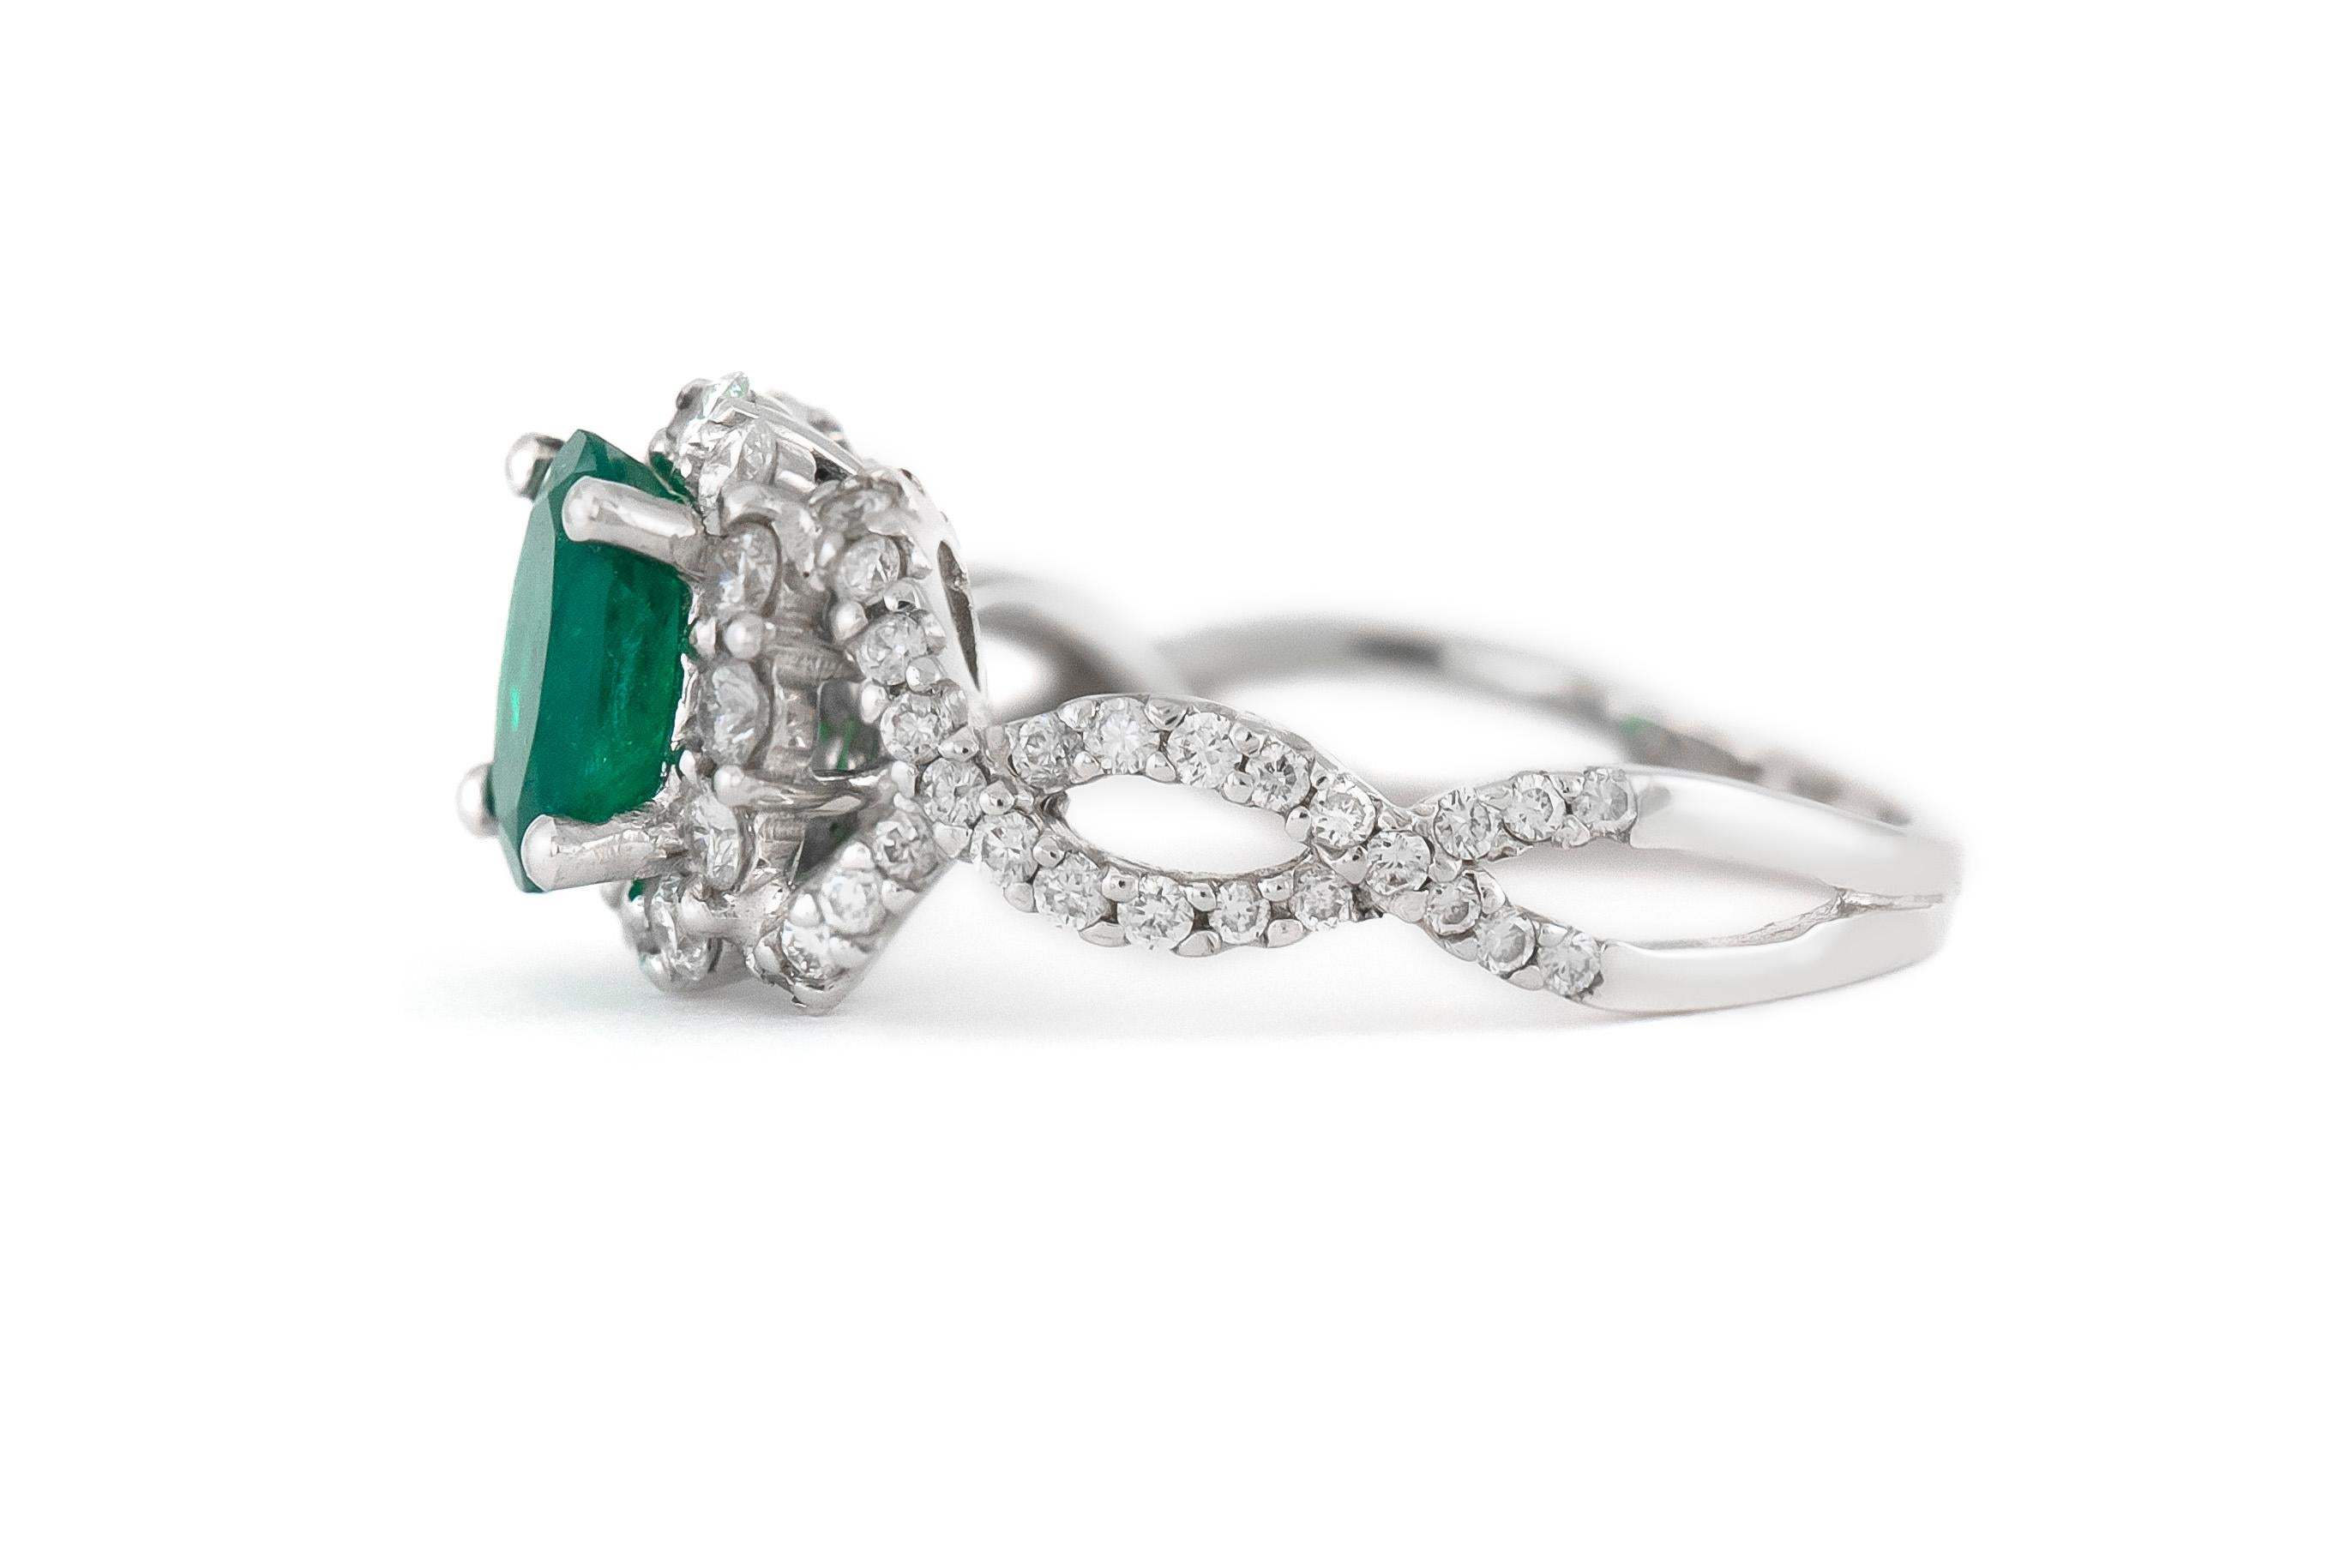 Der Ring ist fein crafed in 18k Weißgold mit Zentrum schönen Smaragd mit einem Gesamtgewicht von etwa 1,07 Karat und Diamanten mit einem Gesamtgewicht von etwa 0,80 Karat.
Um 1950.